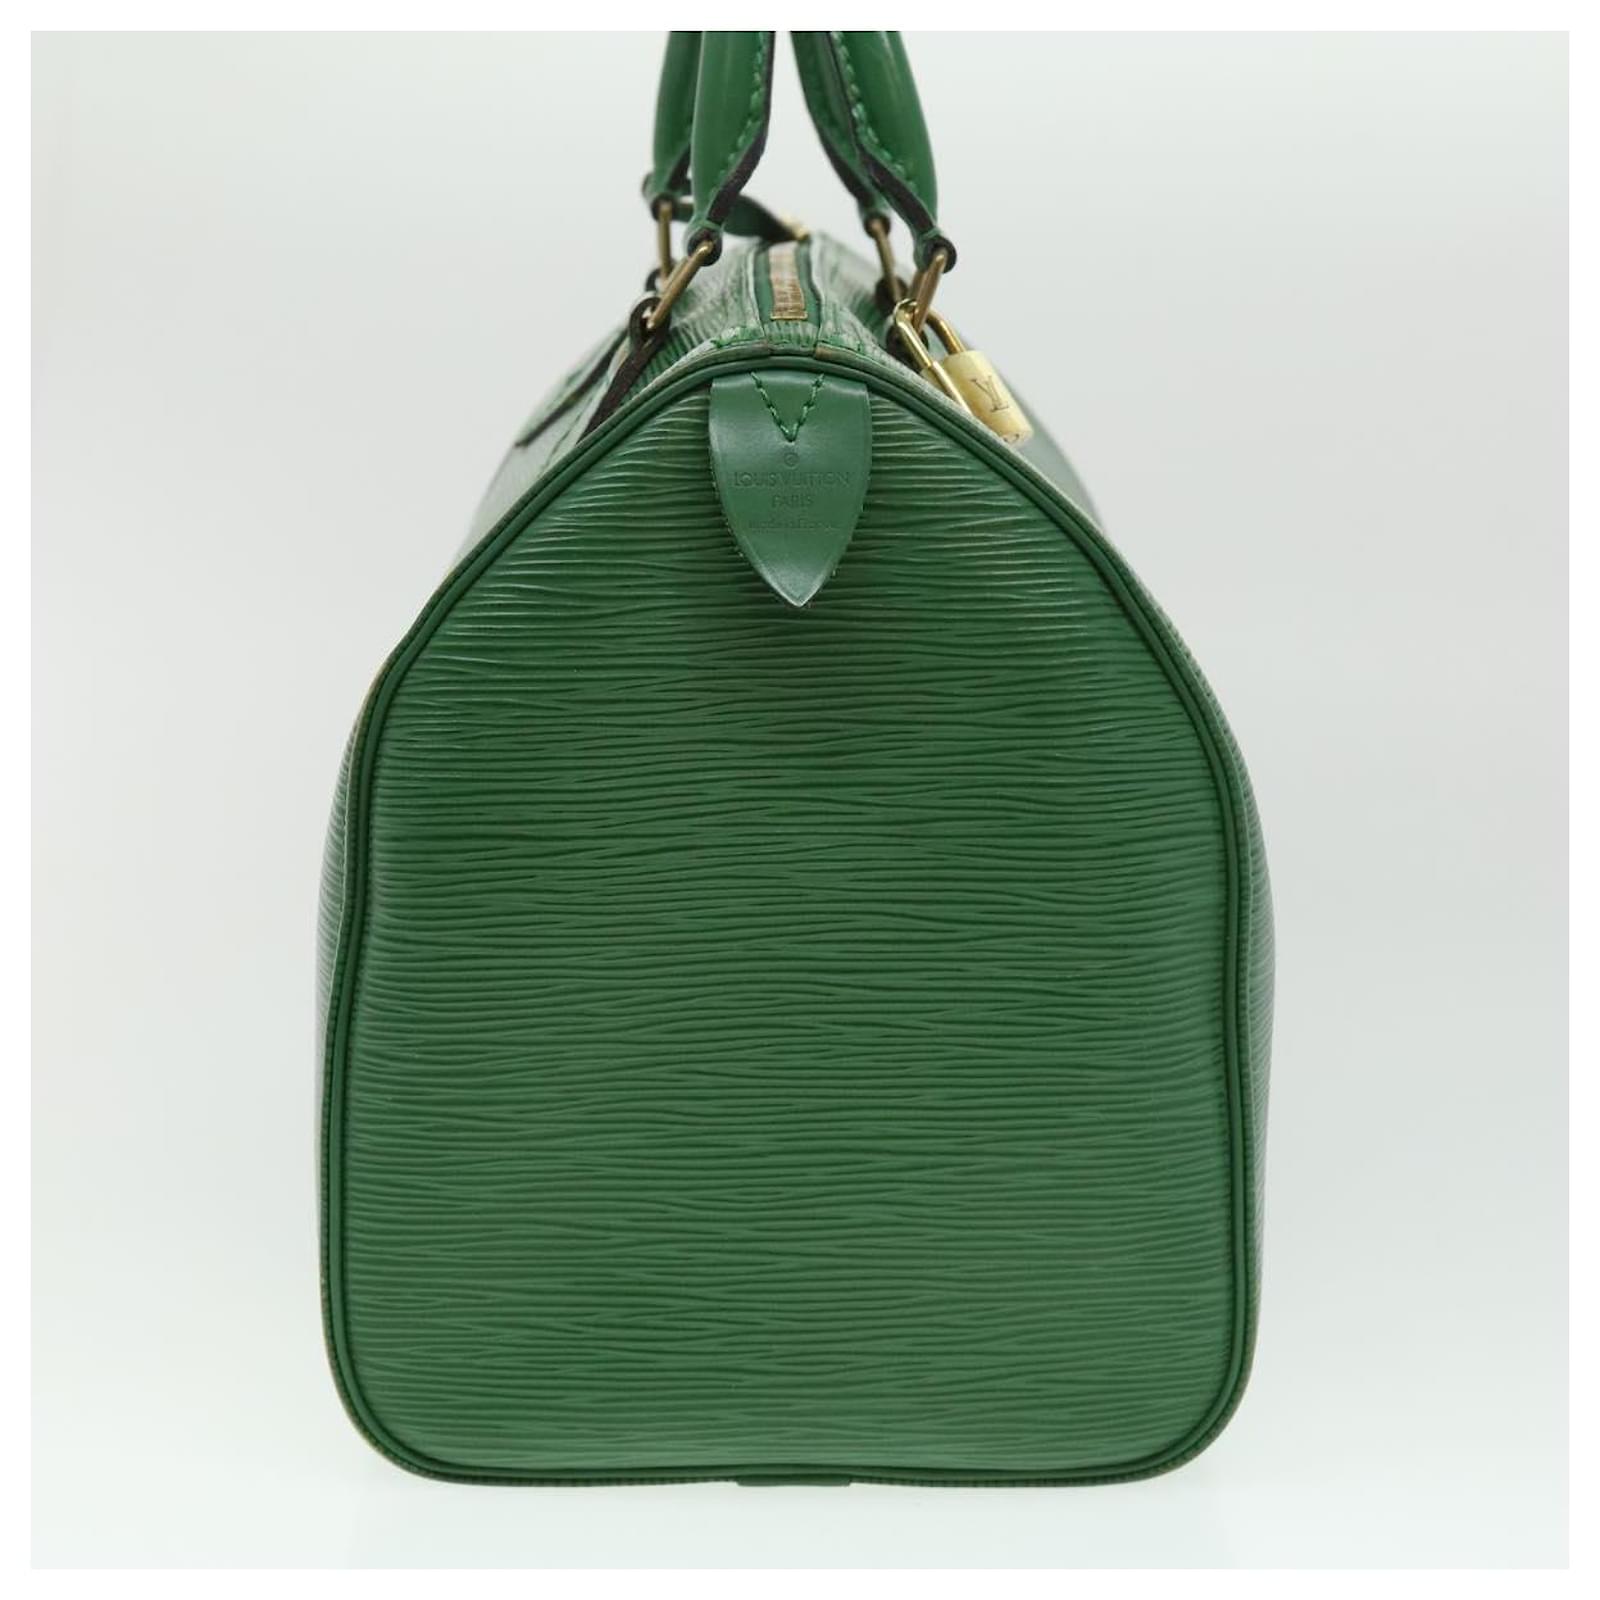 LOUIS VUITTON Handbag M43004 Speedy 30 Epi Epi Leather green Women